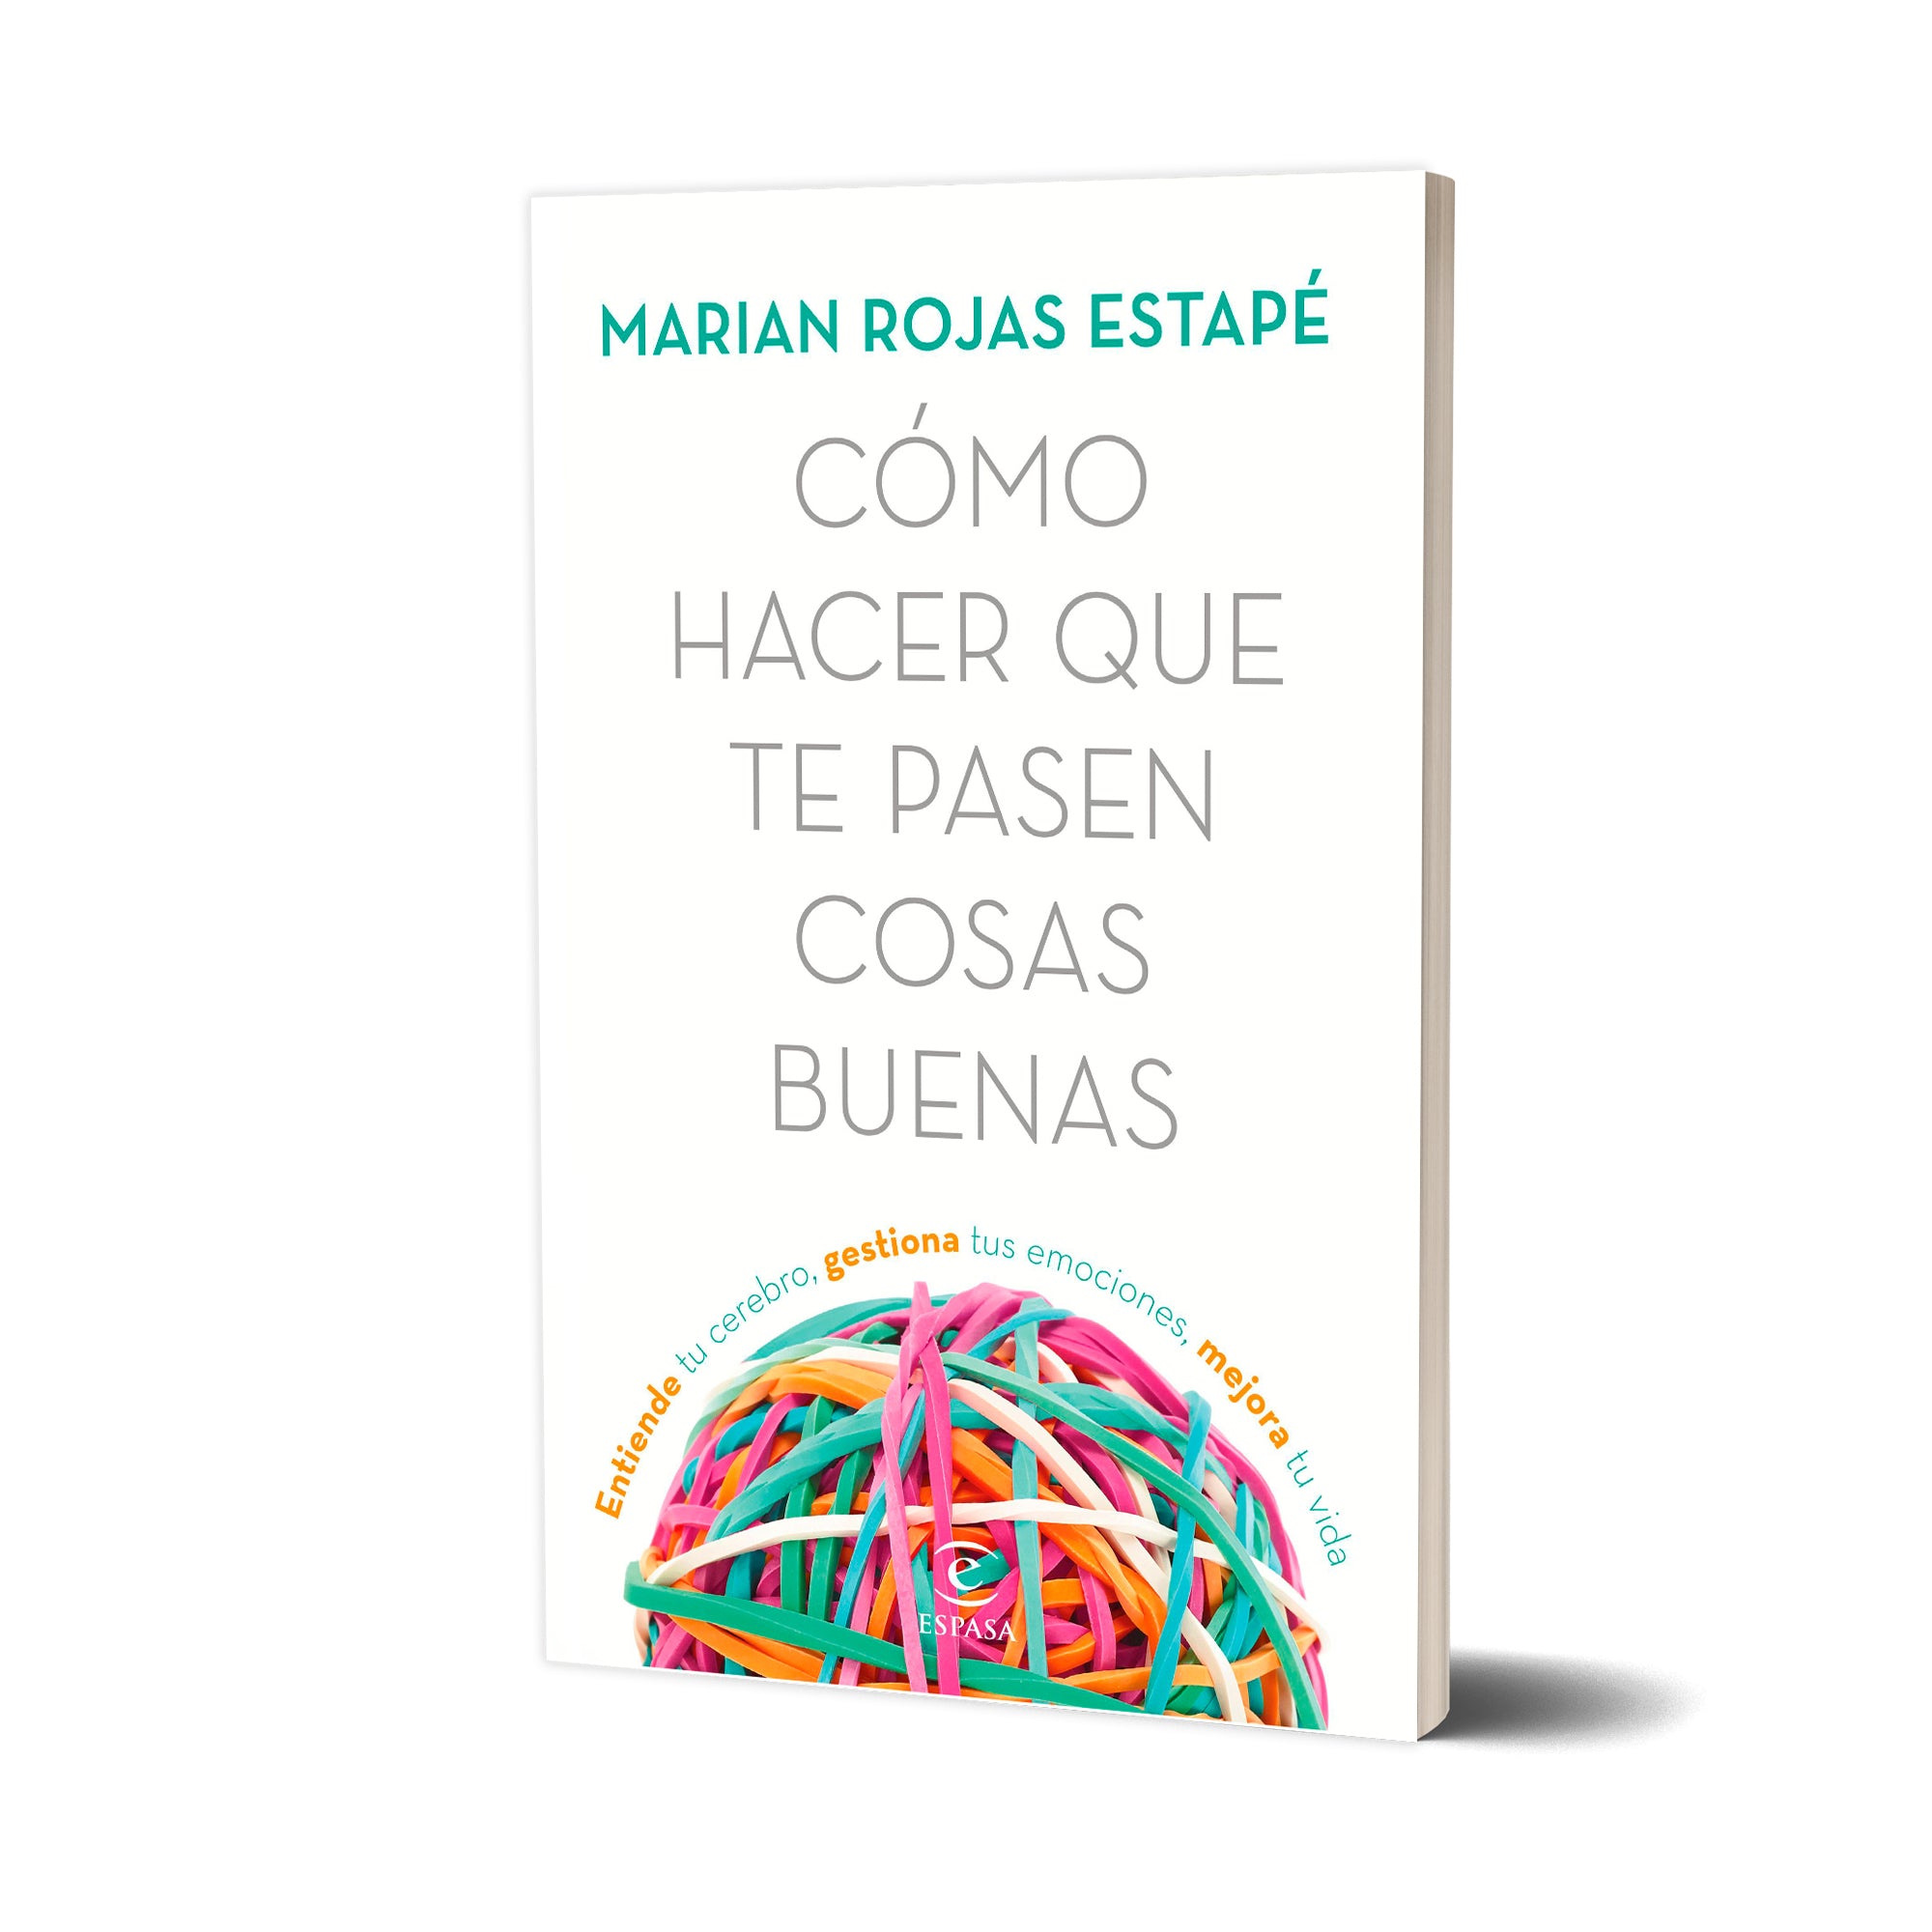 Libro Marian Rojas Estapé - Cómo Hacer Que Te Pasen Cosas Buenas